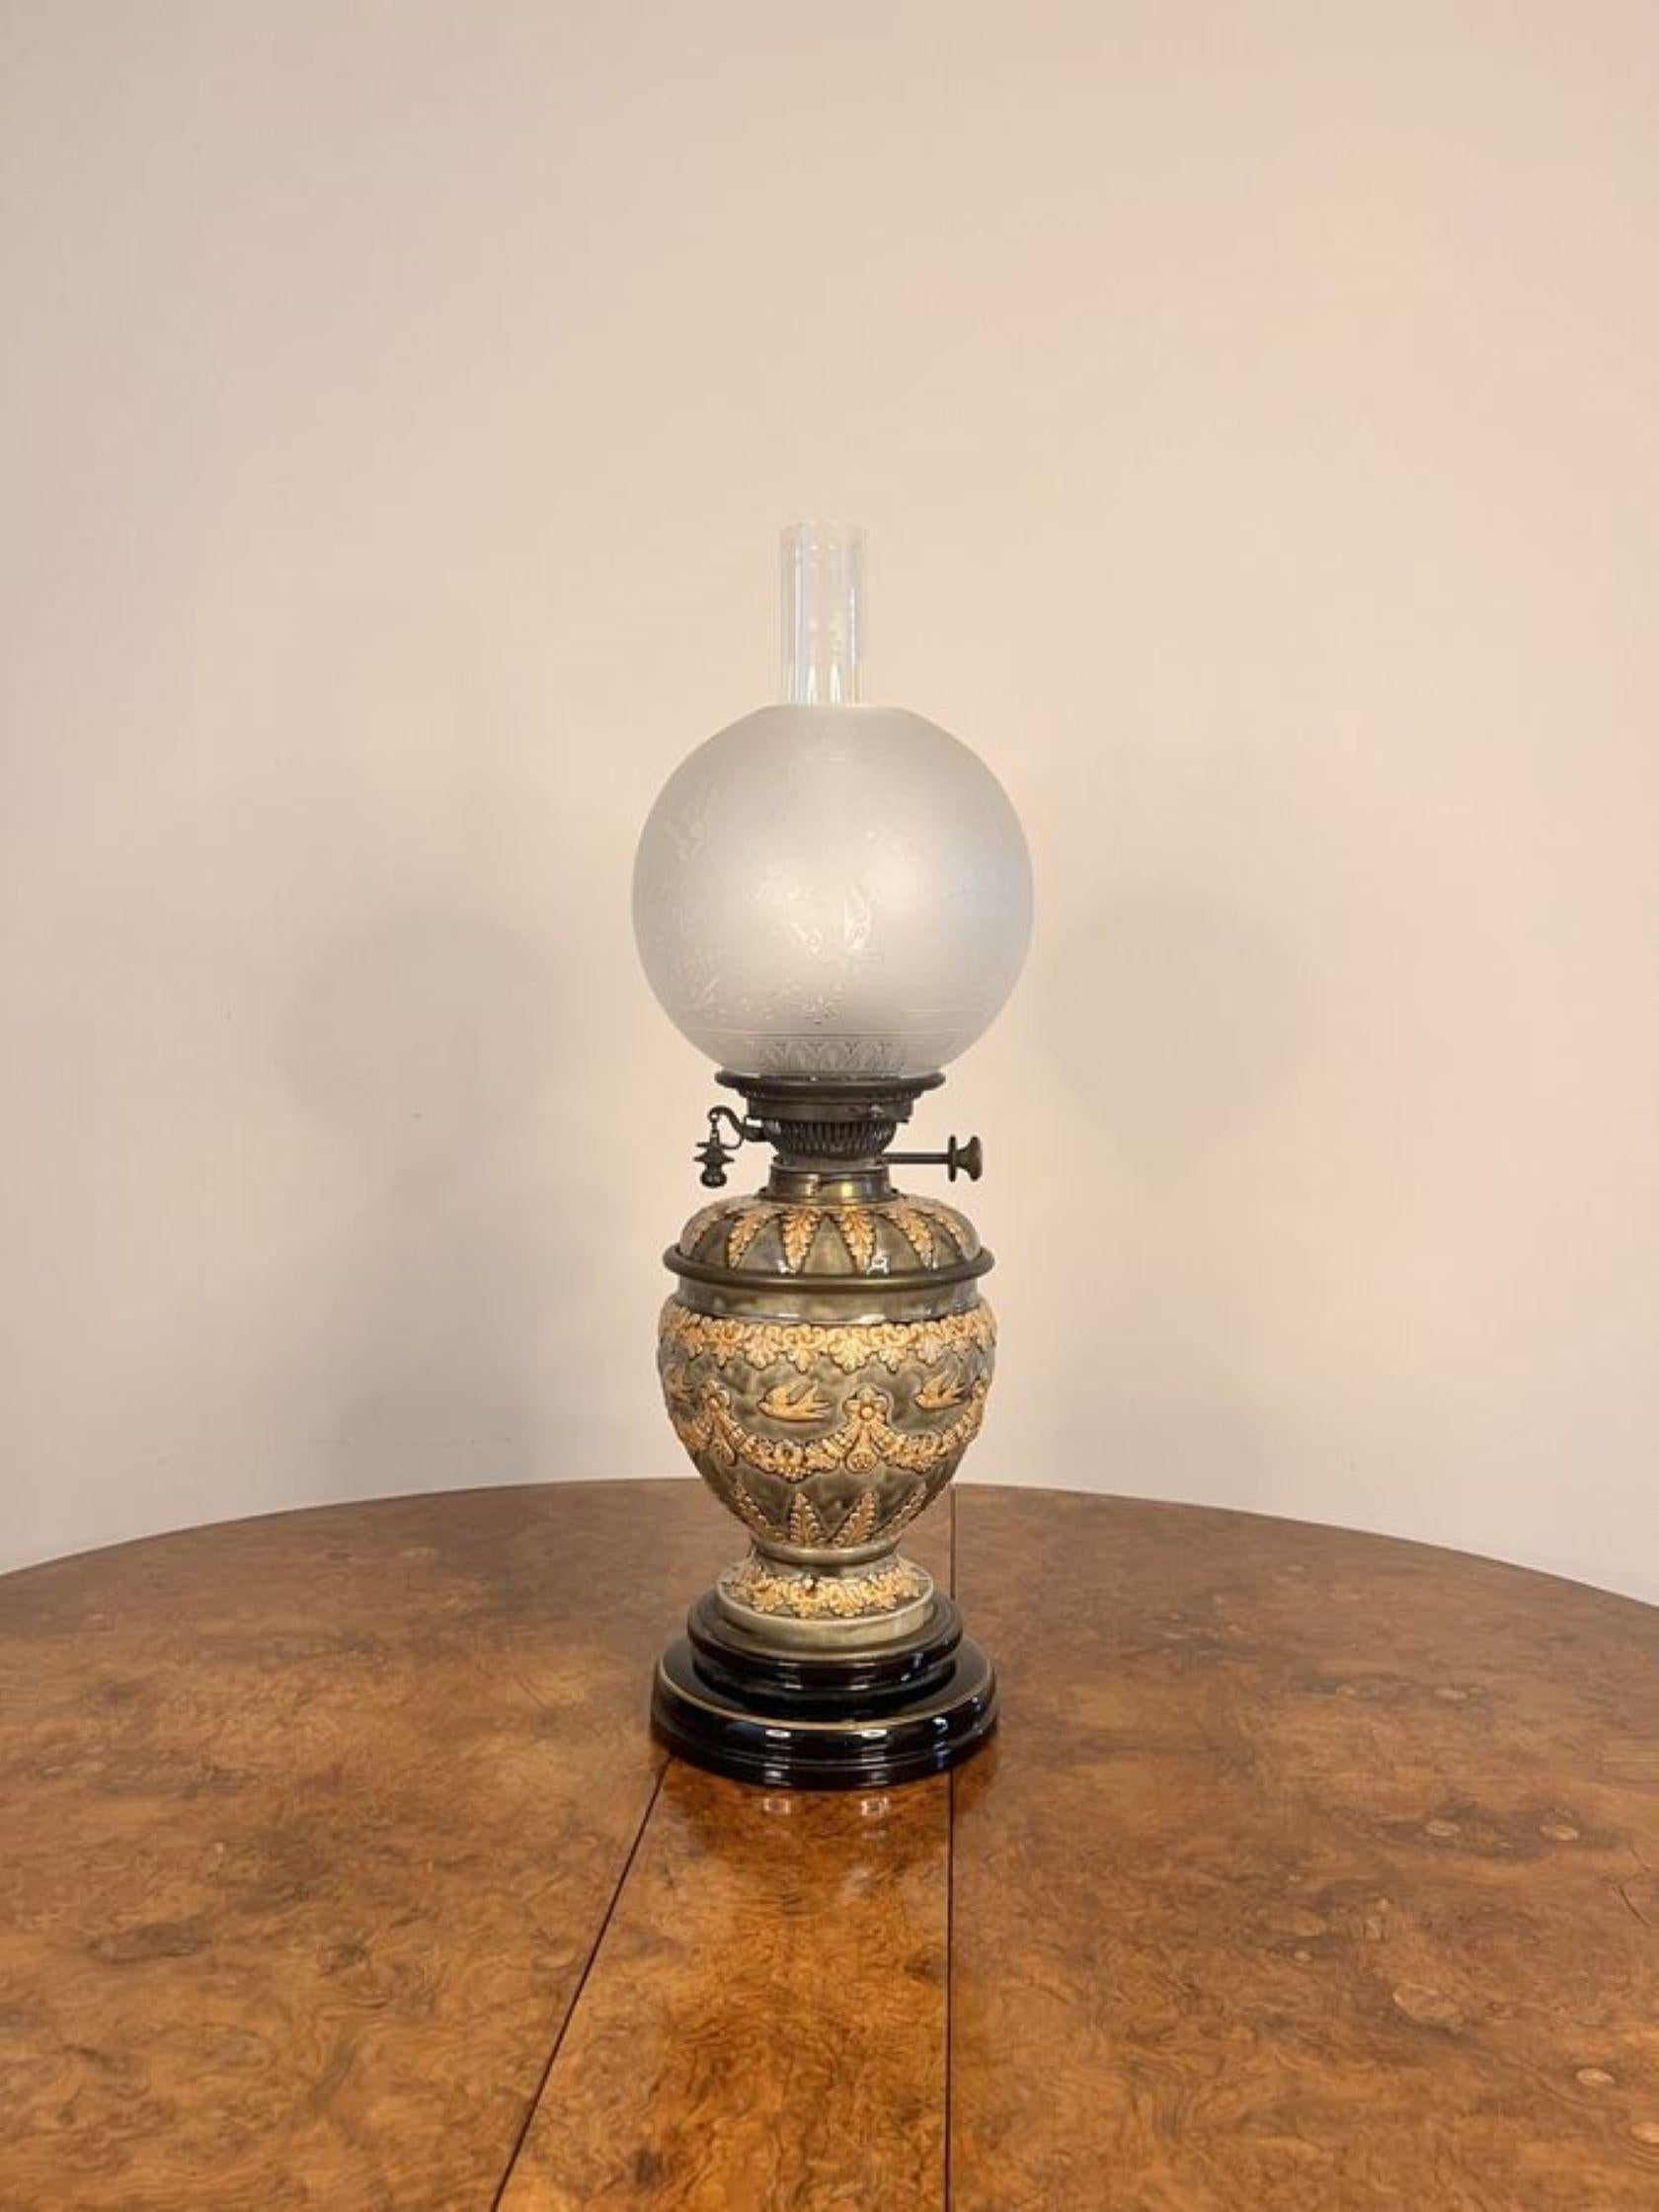 Fantastique lampe à huile victorienne Doulton Lambeth de qualité ancienne, avec un abat-jour en verre gravé et une cheminée en verre, un double brûleur en laiton soutenu par une superbe colonne en forme de vase en céramique verte et crème peinte à